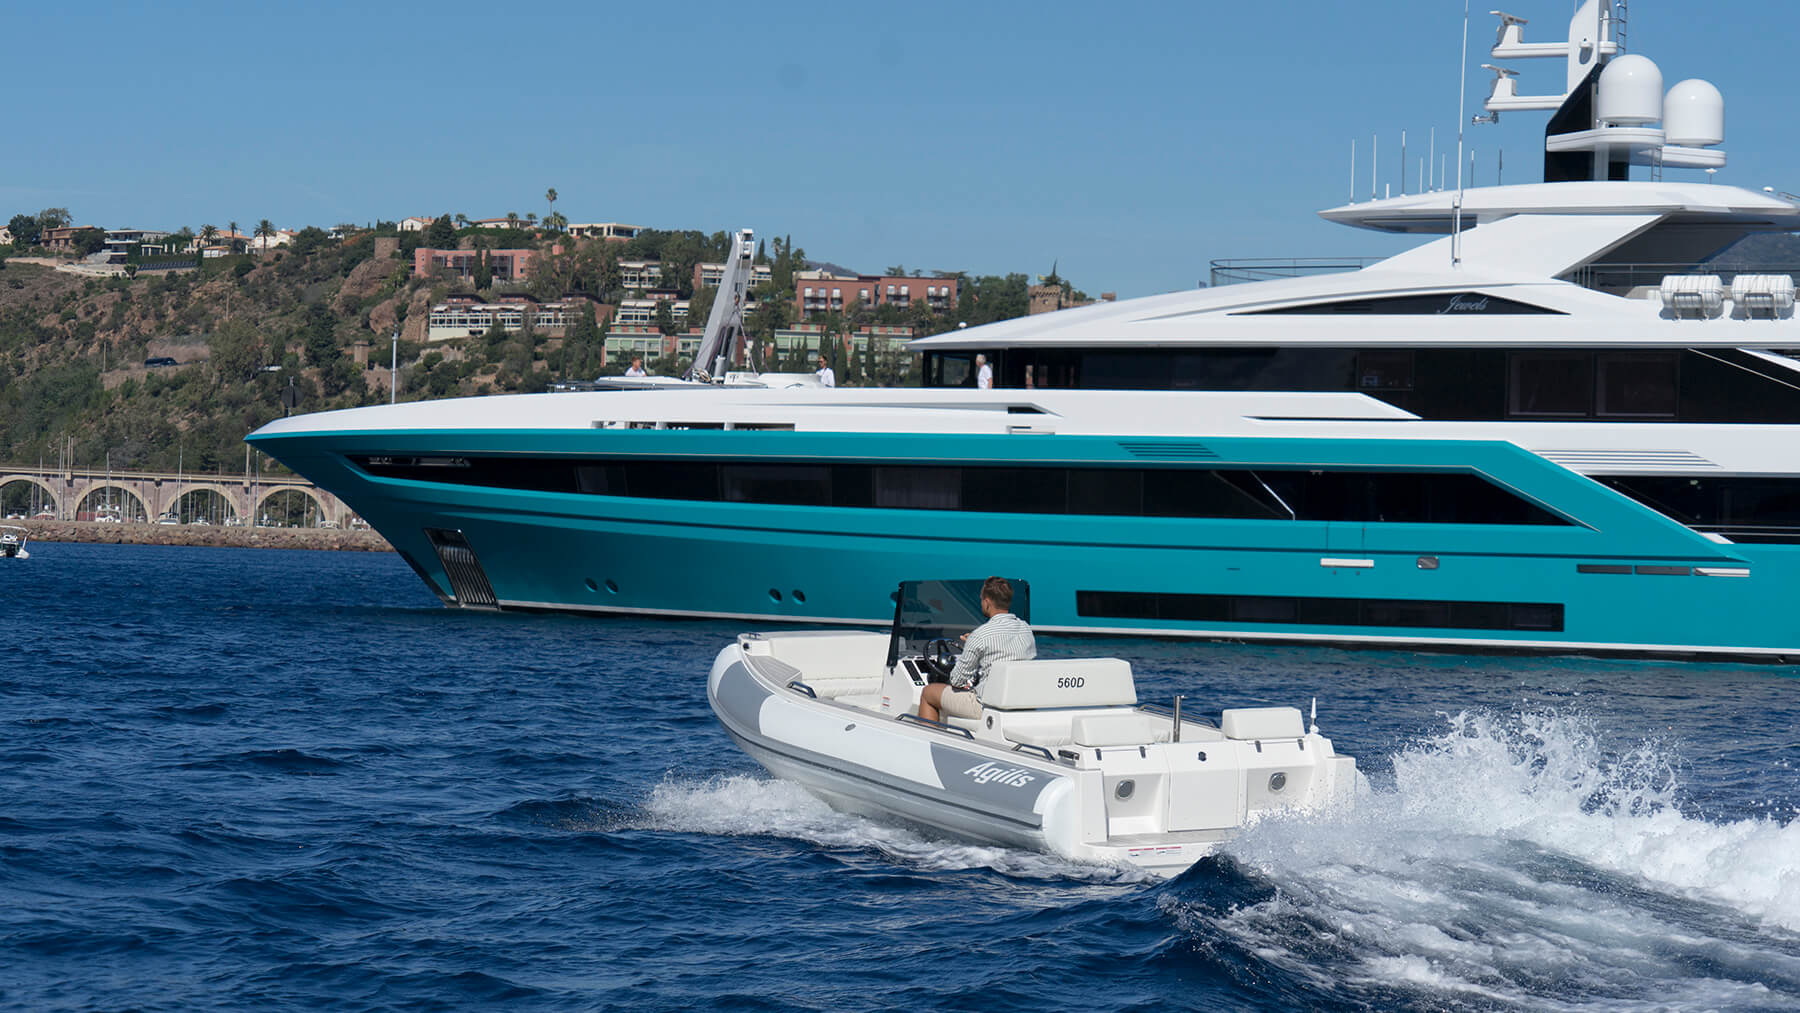 Superyacht tender – luxury tender in Agilis range